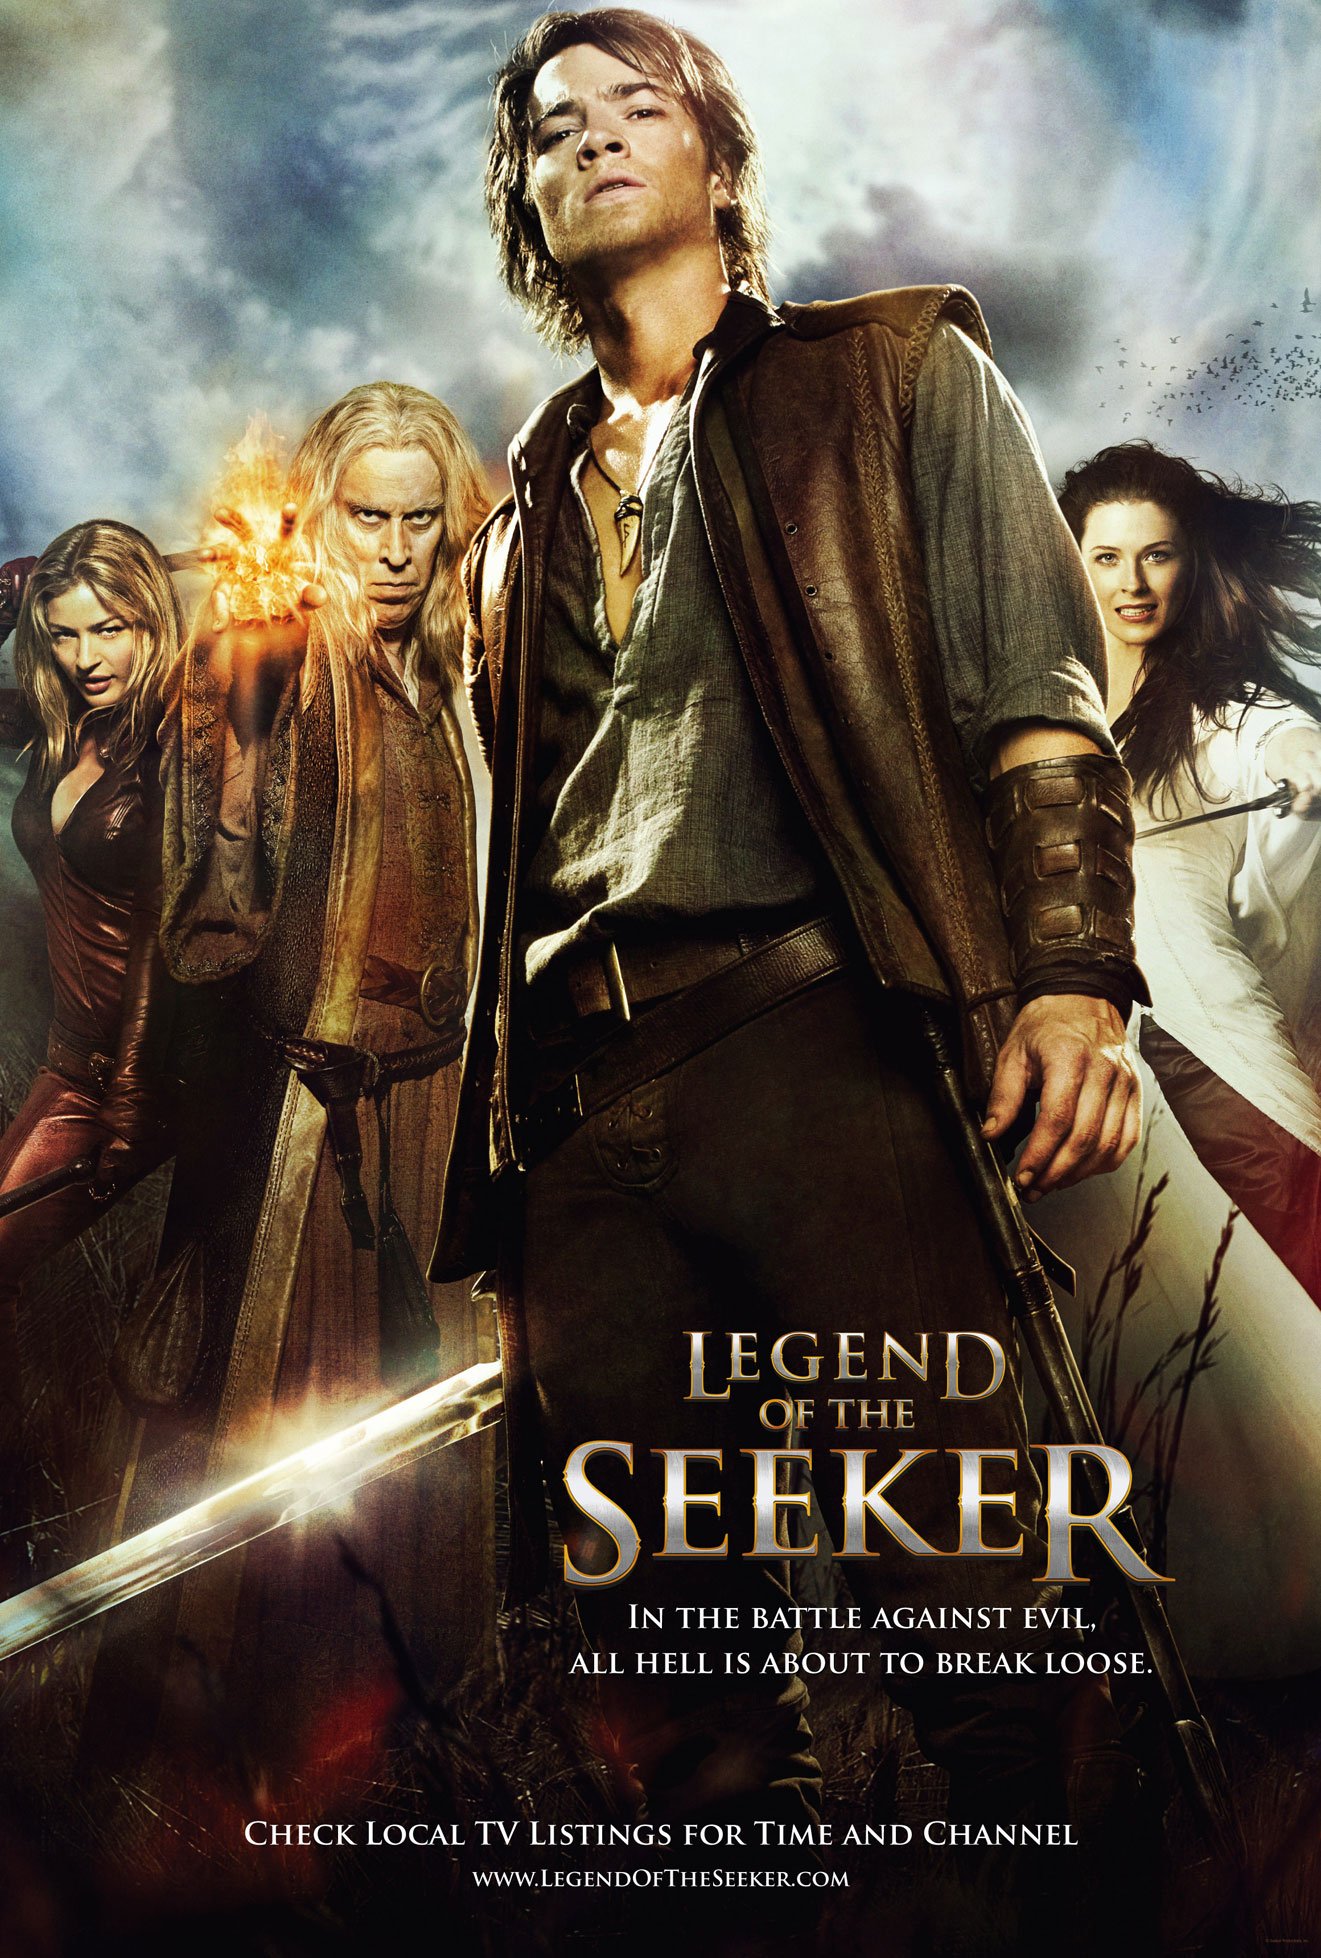 مسلسل الأكشن الأسطوري الرهيب Legend of the Seeker الموسم الثاني بجودة HDTV تحميل مباشر  Legend_of_the_seeker_2008_433_poster